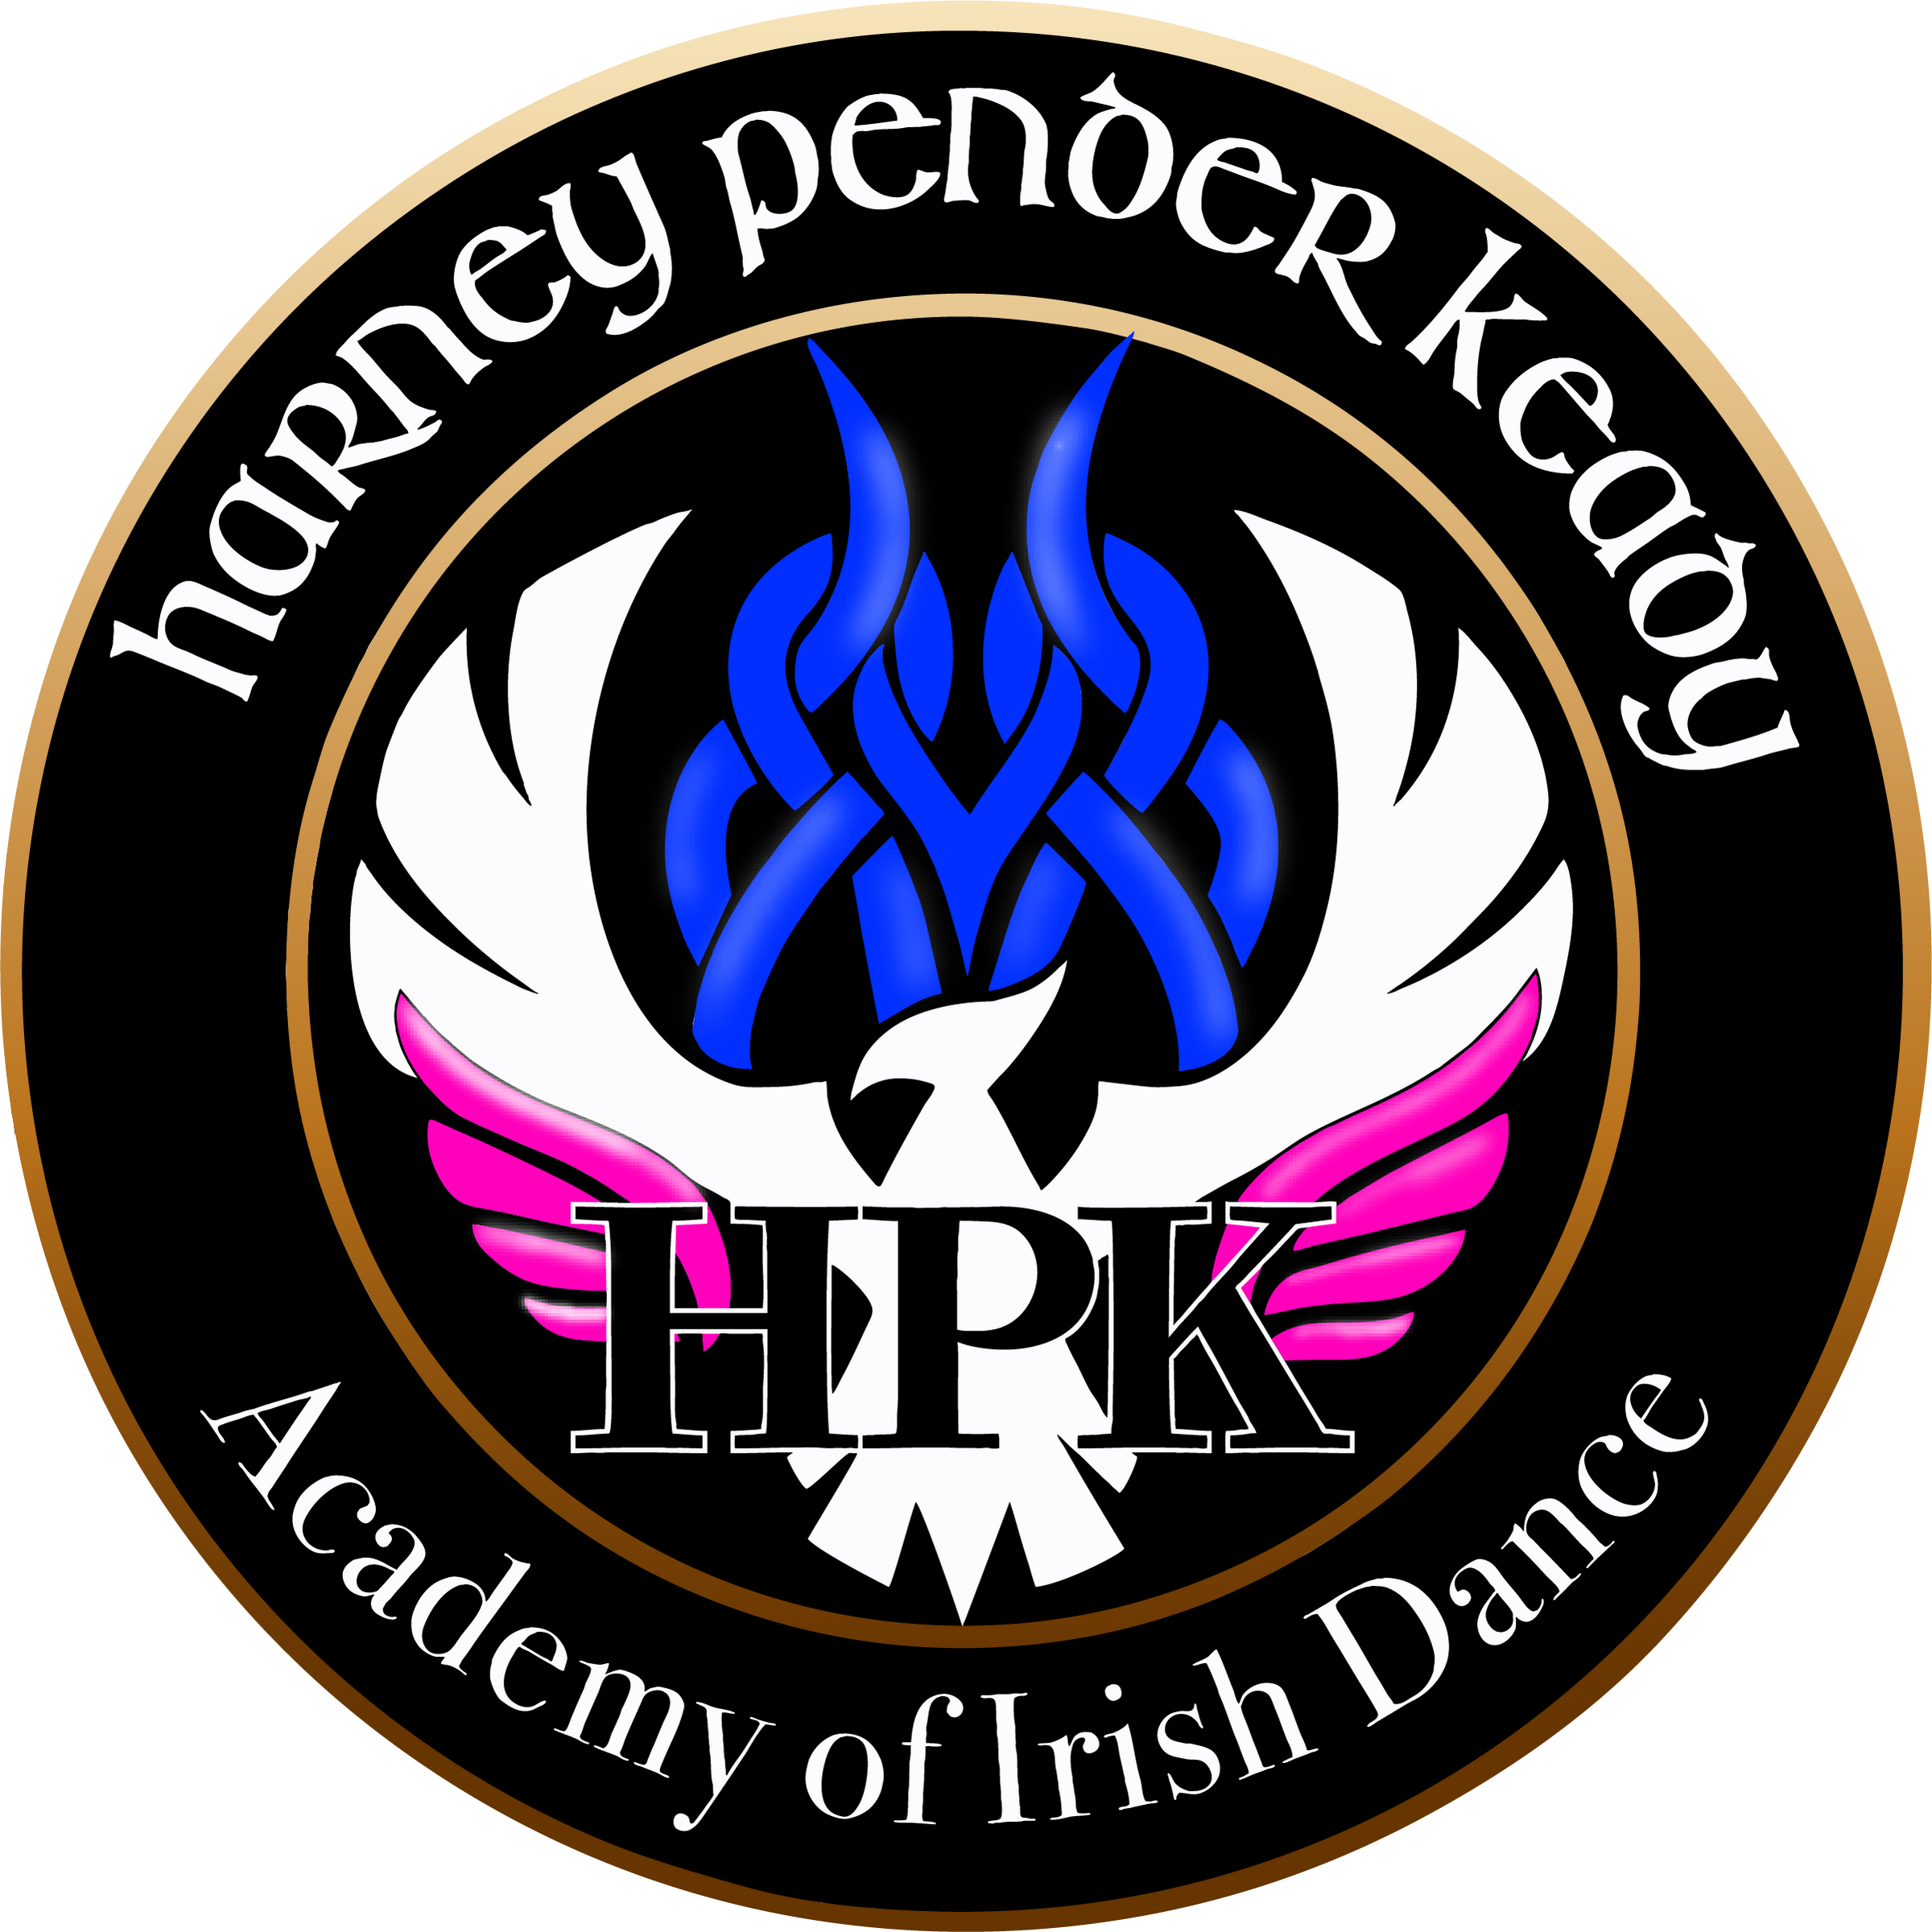 HPK ACADEMY OF IRISH DANCE